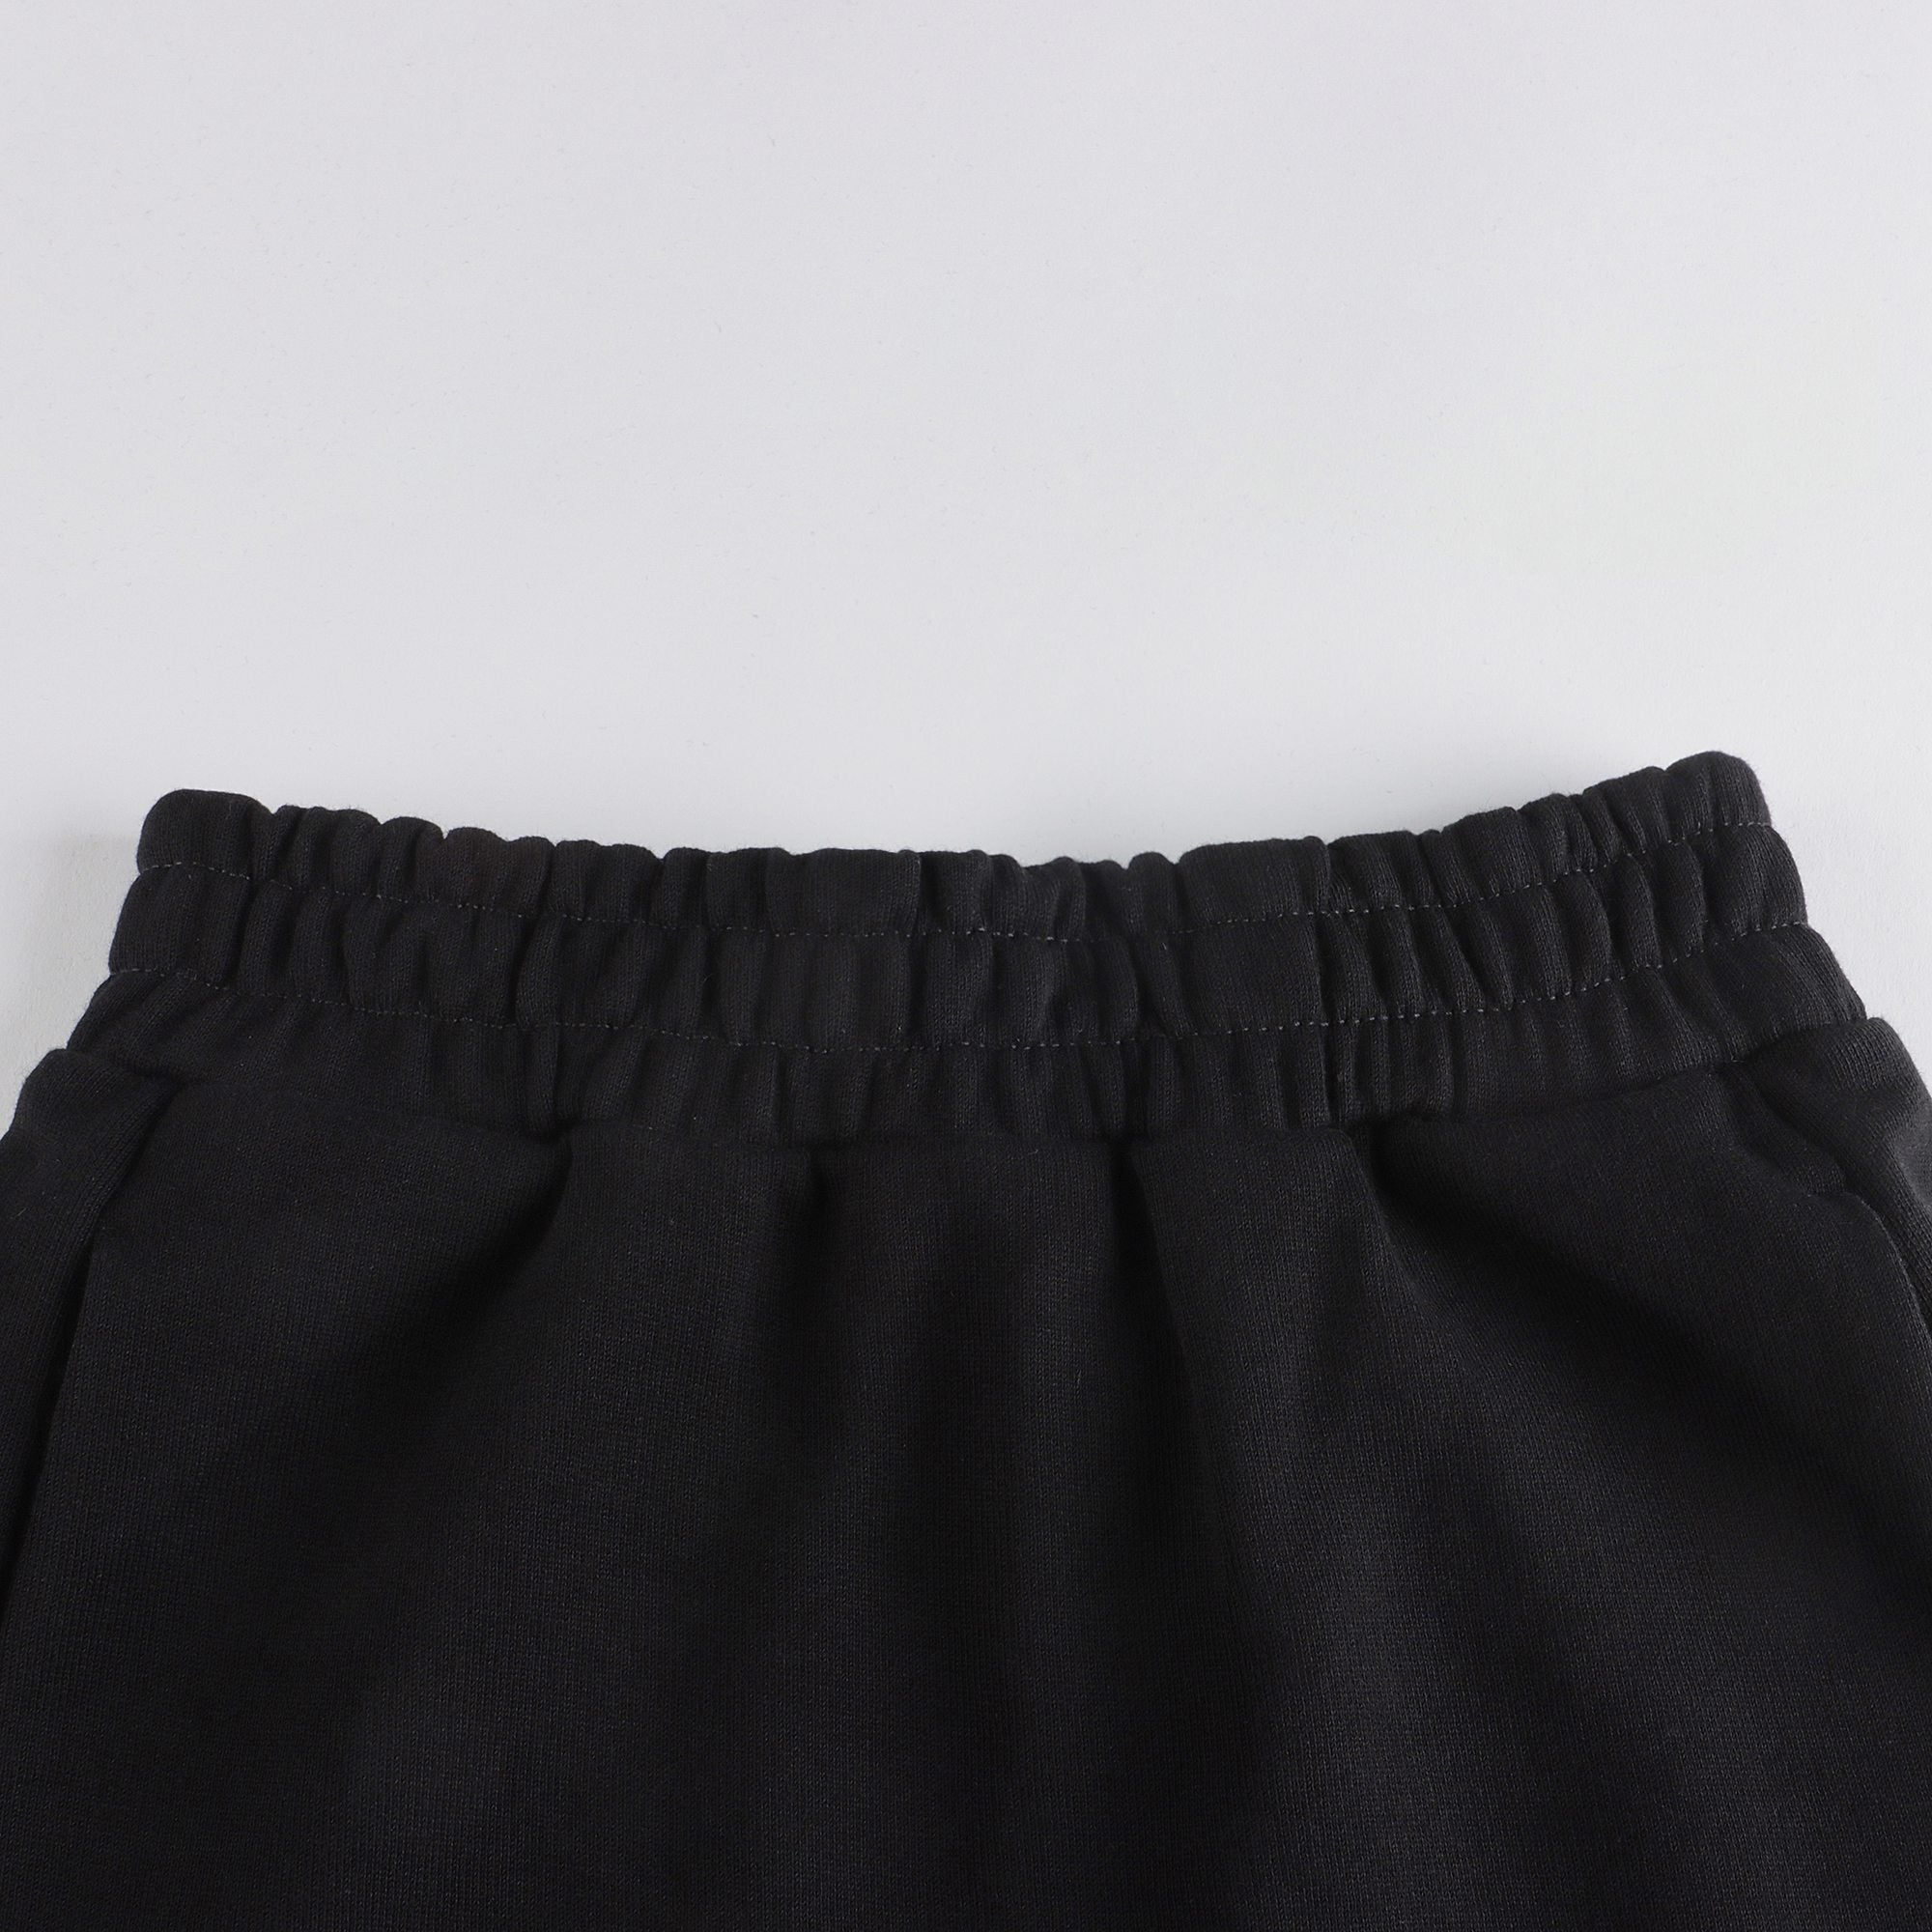 Girls Black Cotton Skirt